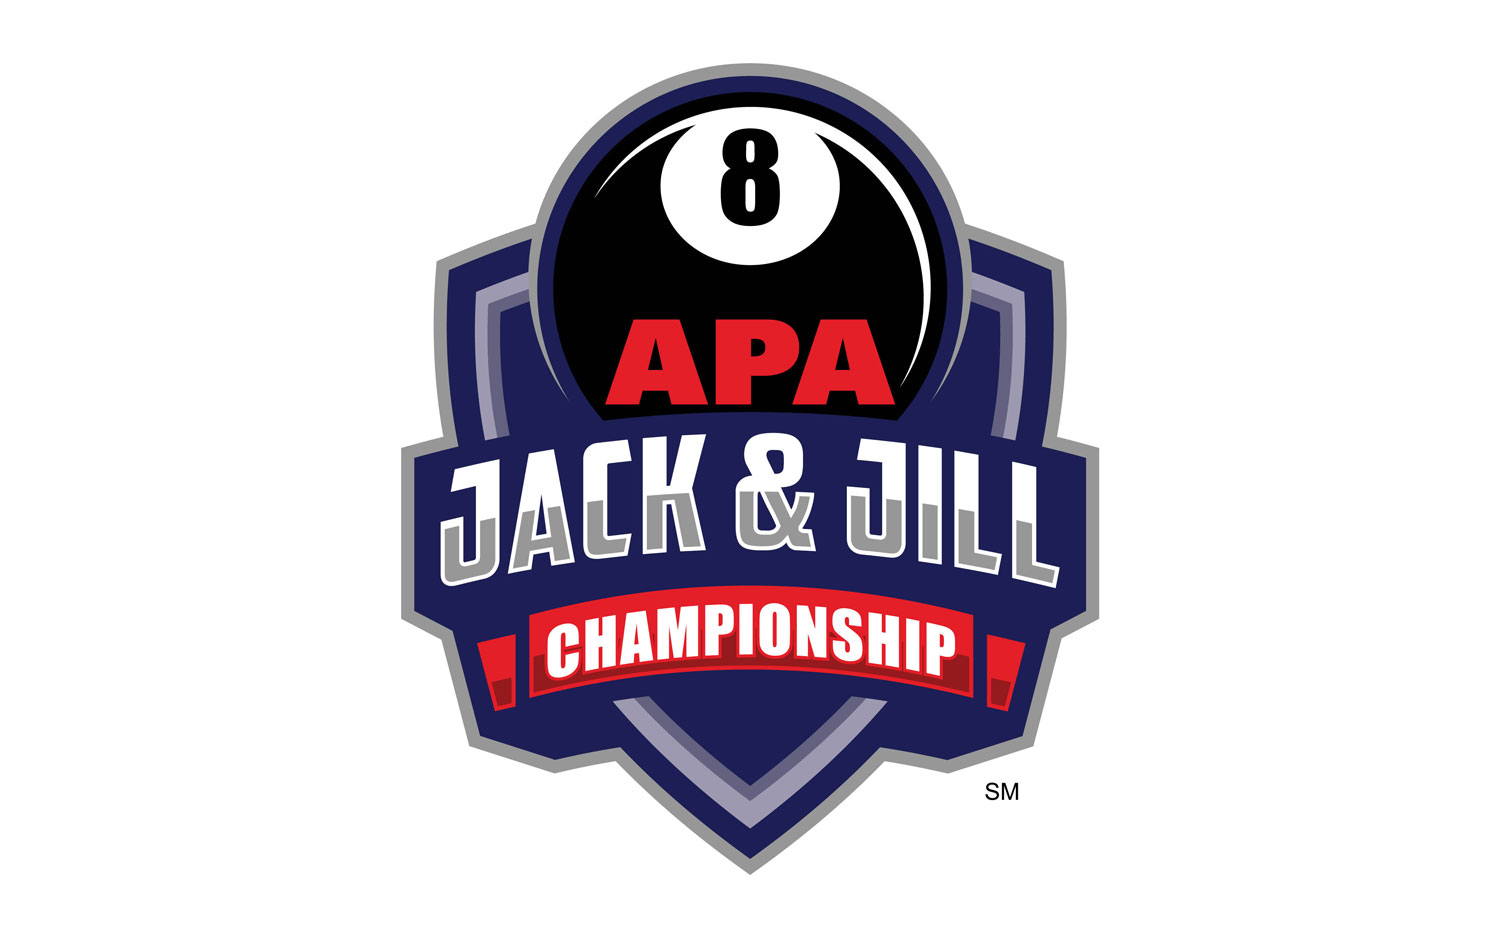 APA Jack & Jill Logo